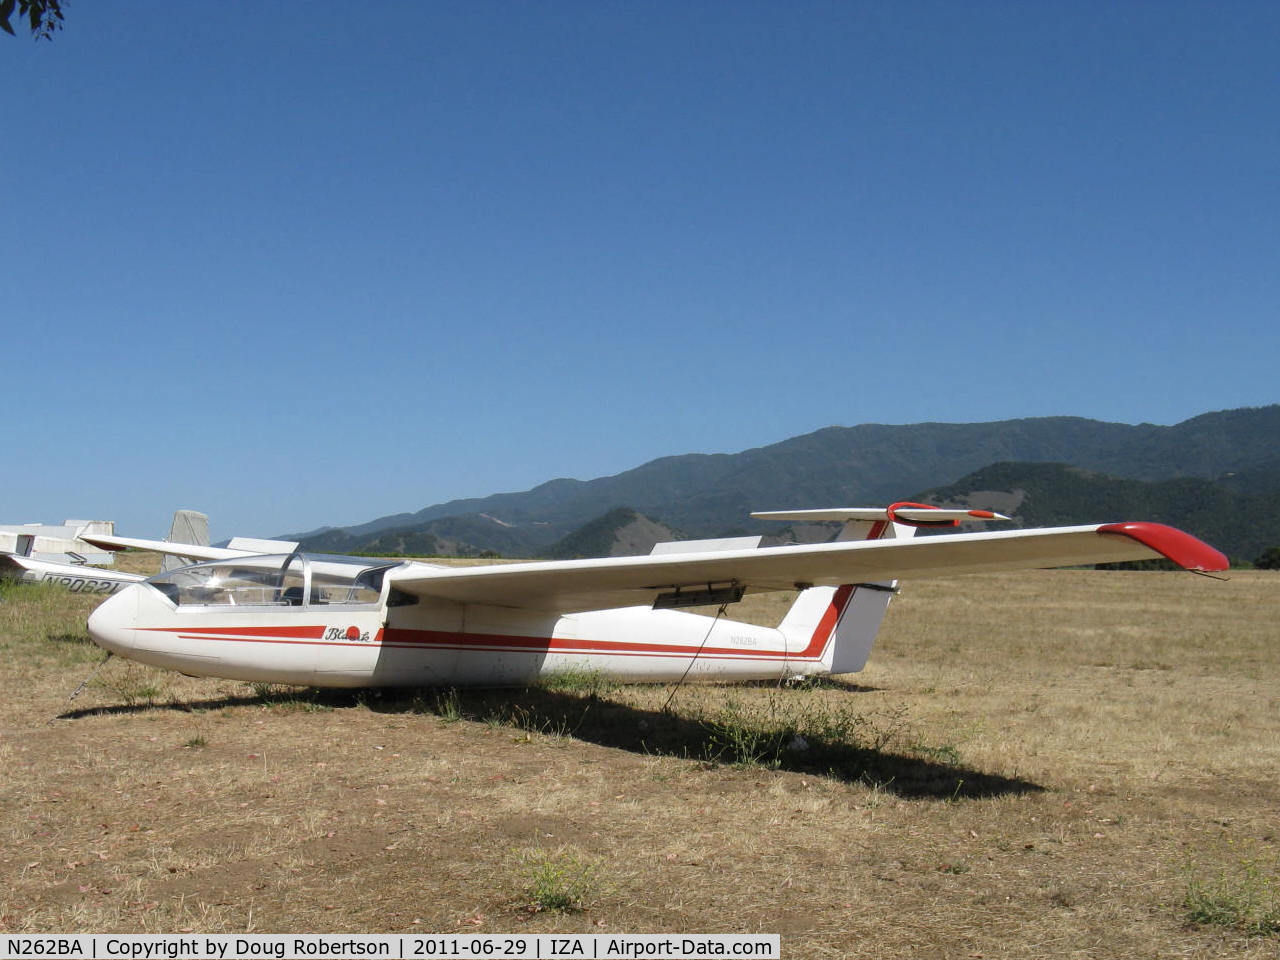 N262BA, 1993 Let L-23 Super Blanik C/N 938019, 1993 LET L-23 SUPER BLANIK glider